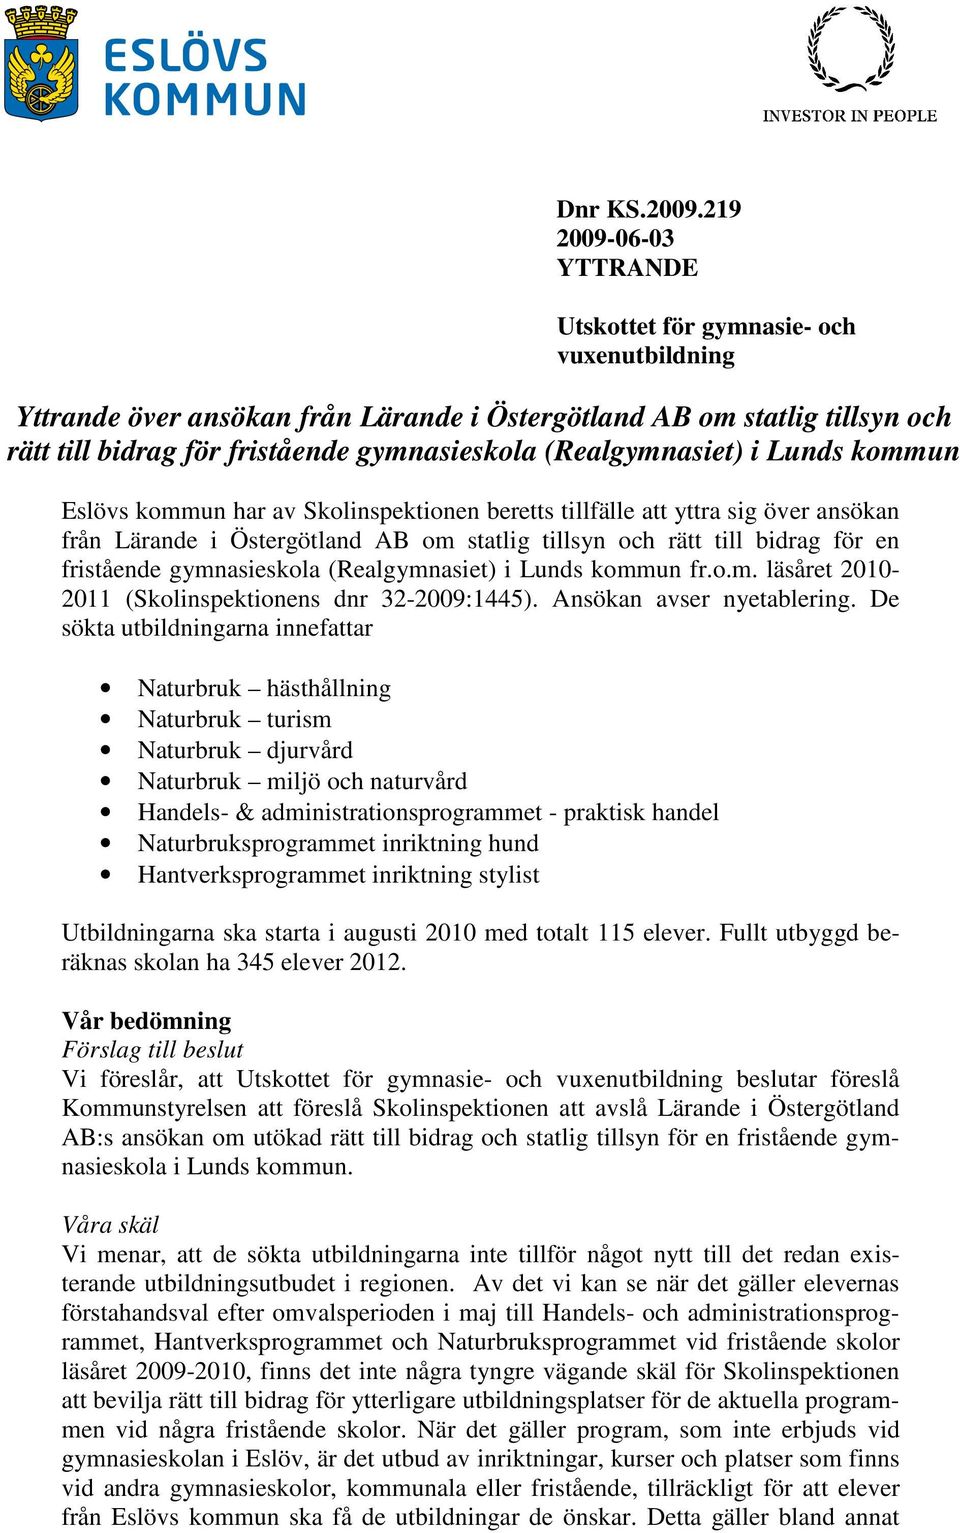 (Realgymnasiet) i Lunds kommun s kommun har av Skolinspektionen beretts tillfälle att yttra sig över ansökan från Lärande i Östergötland AB om statlig tillsyn och rätt till bidrag för en fristående